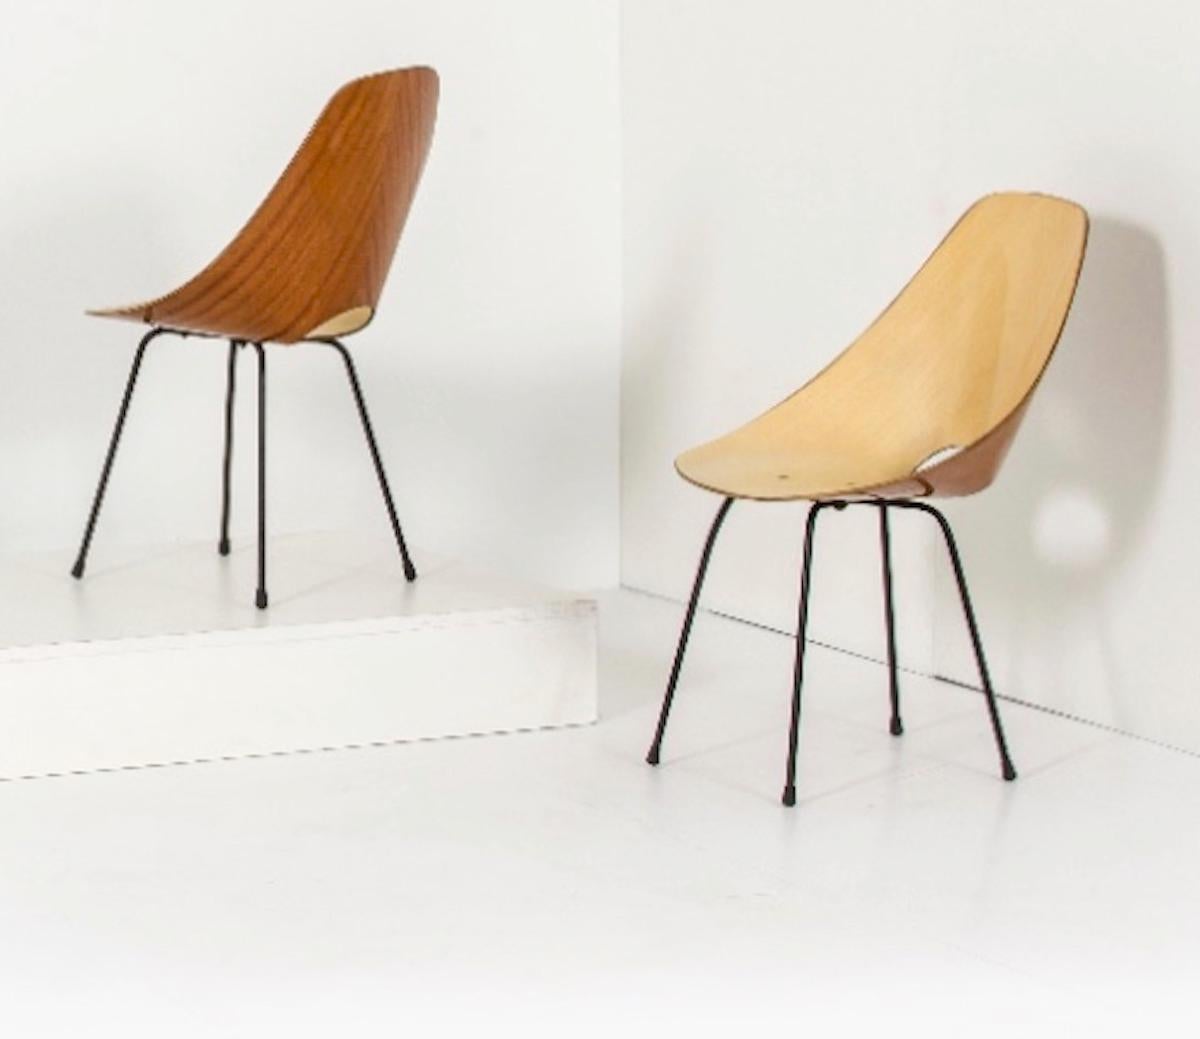 Der ikonische Stuhl Medea wurde 1955 von Vittorio Nobili für Fratelli Tagliabue entworfen und gewann im folgenden Jahr (1956) den Compasso D'Oro auf der Biennale für Industriedesign in Mailand. Gebogenes Sperrholz mit ebonisierter Rückseite auf